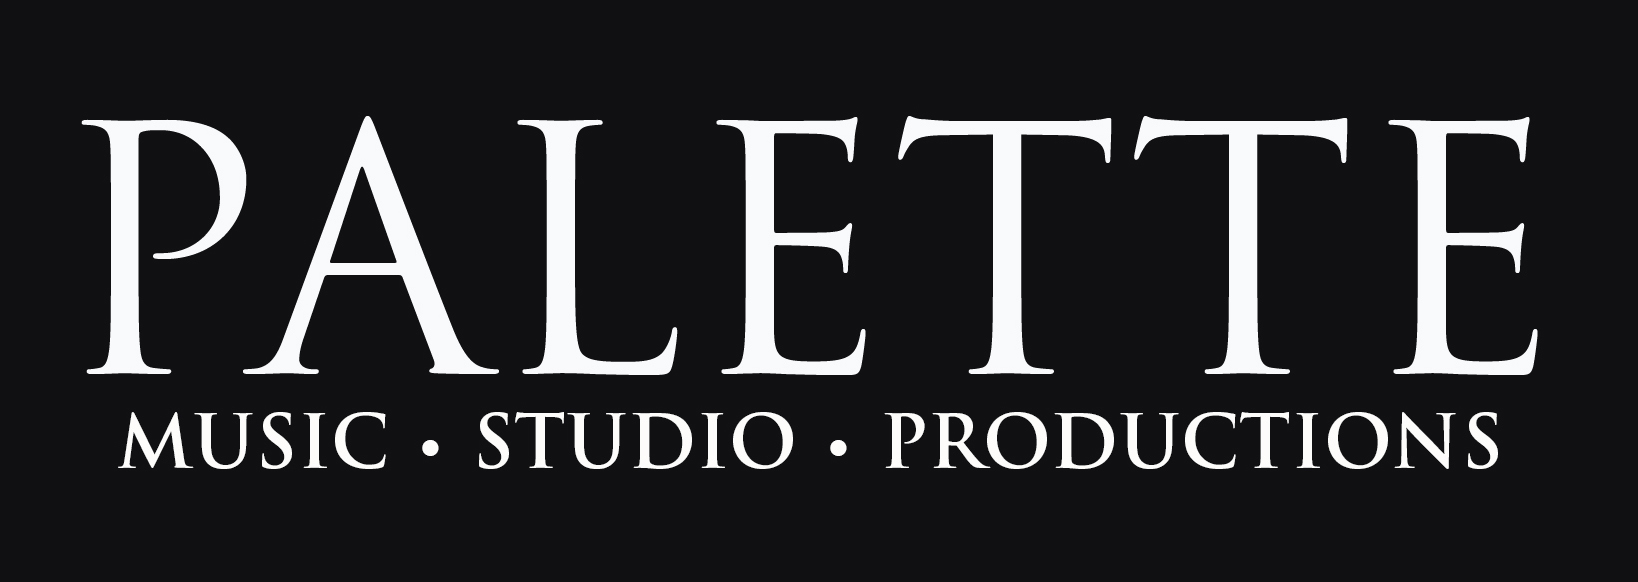 Palette Music Studio Productions (MSP)